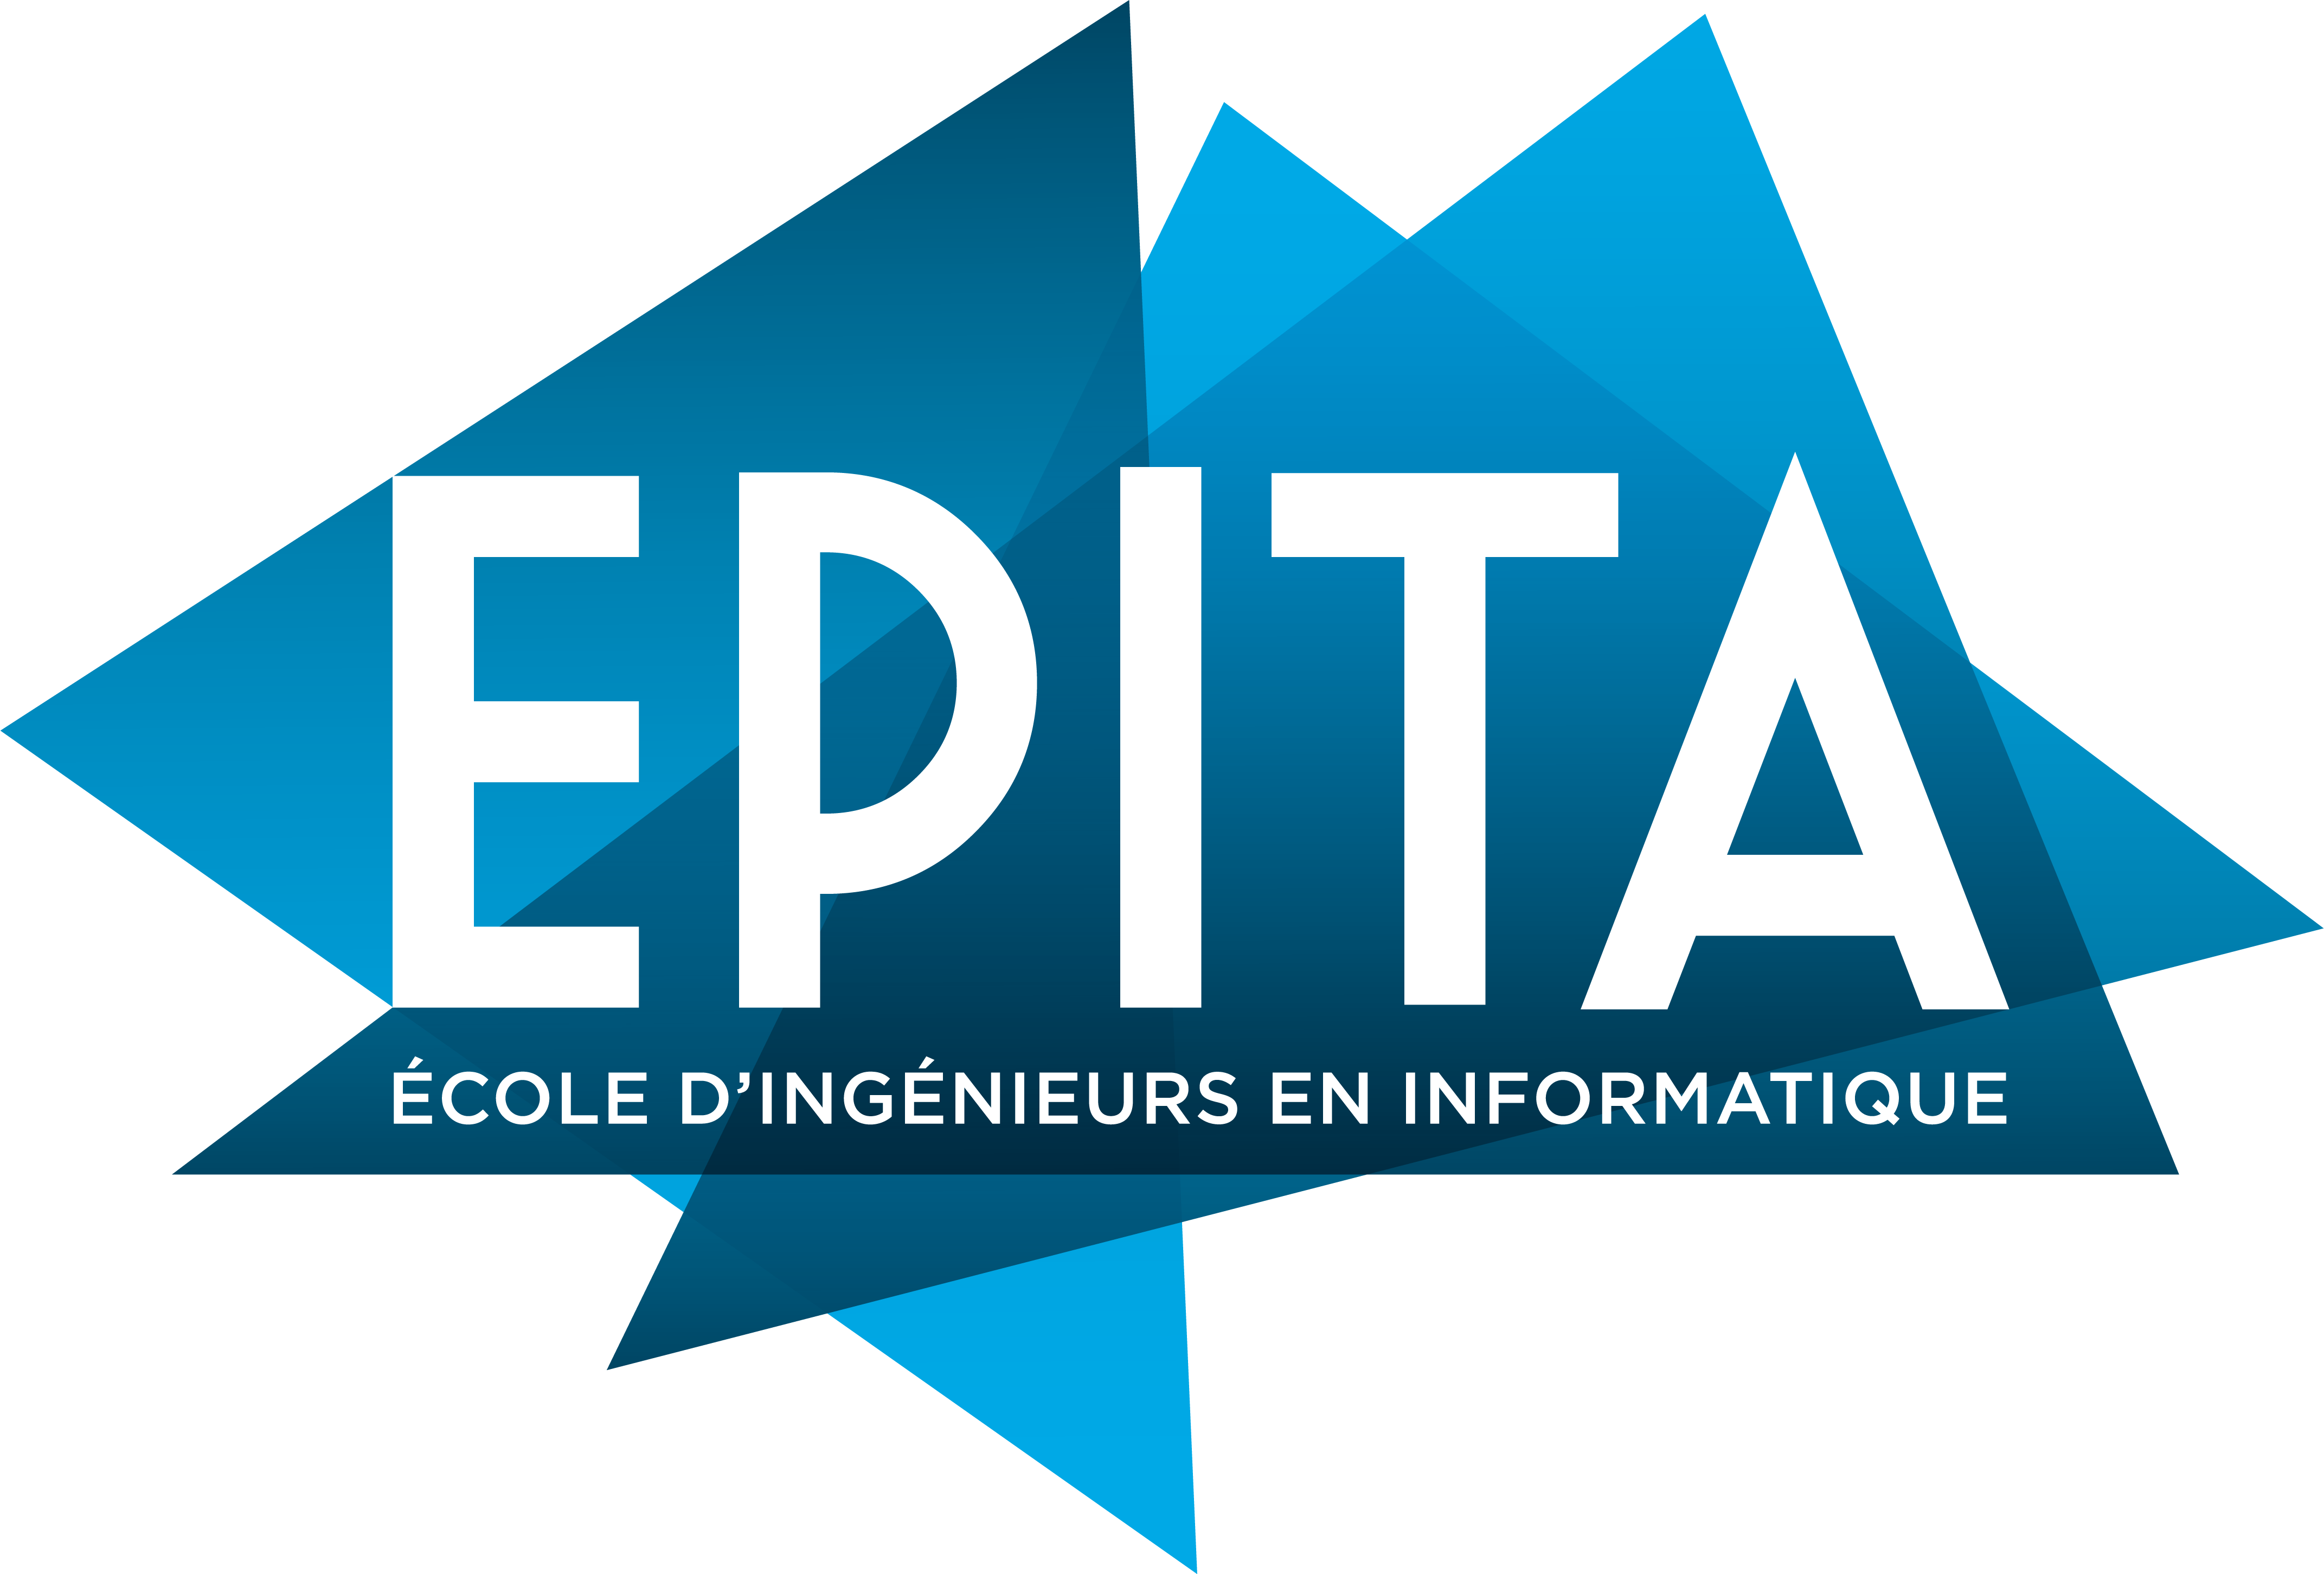 EPITA - L'ÉCOLE DES INGÉNIEURS EN INTELLIGENCE INFORMATIQUE